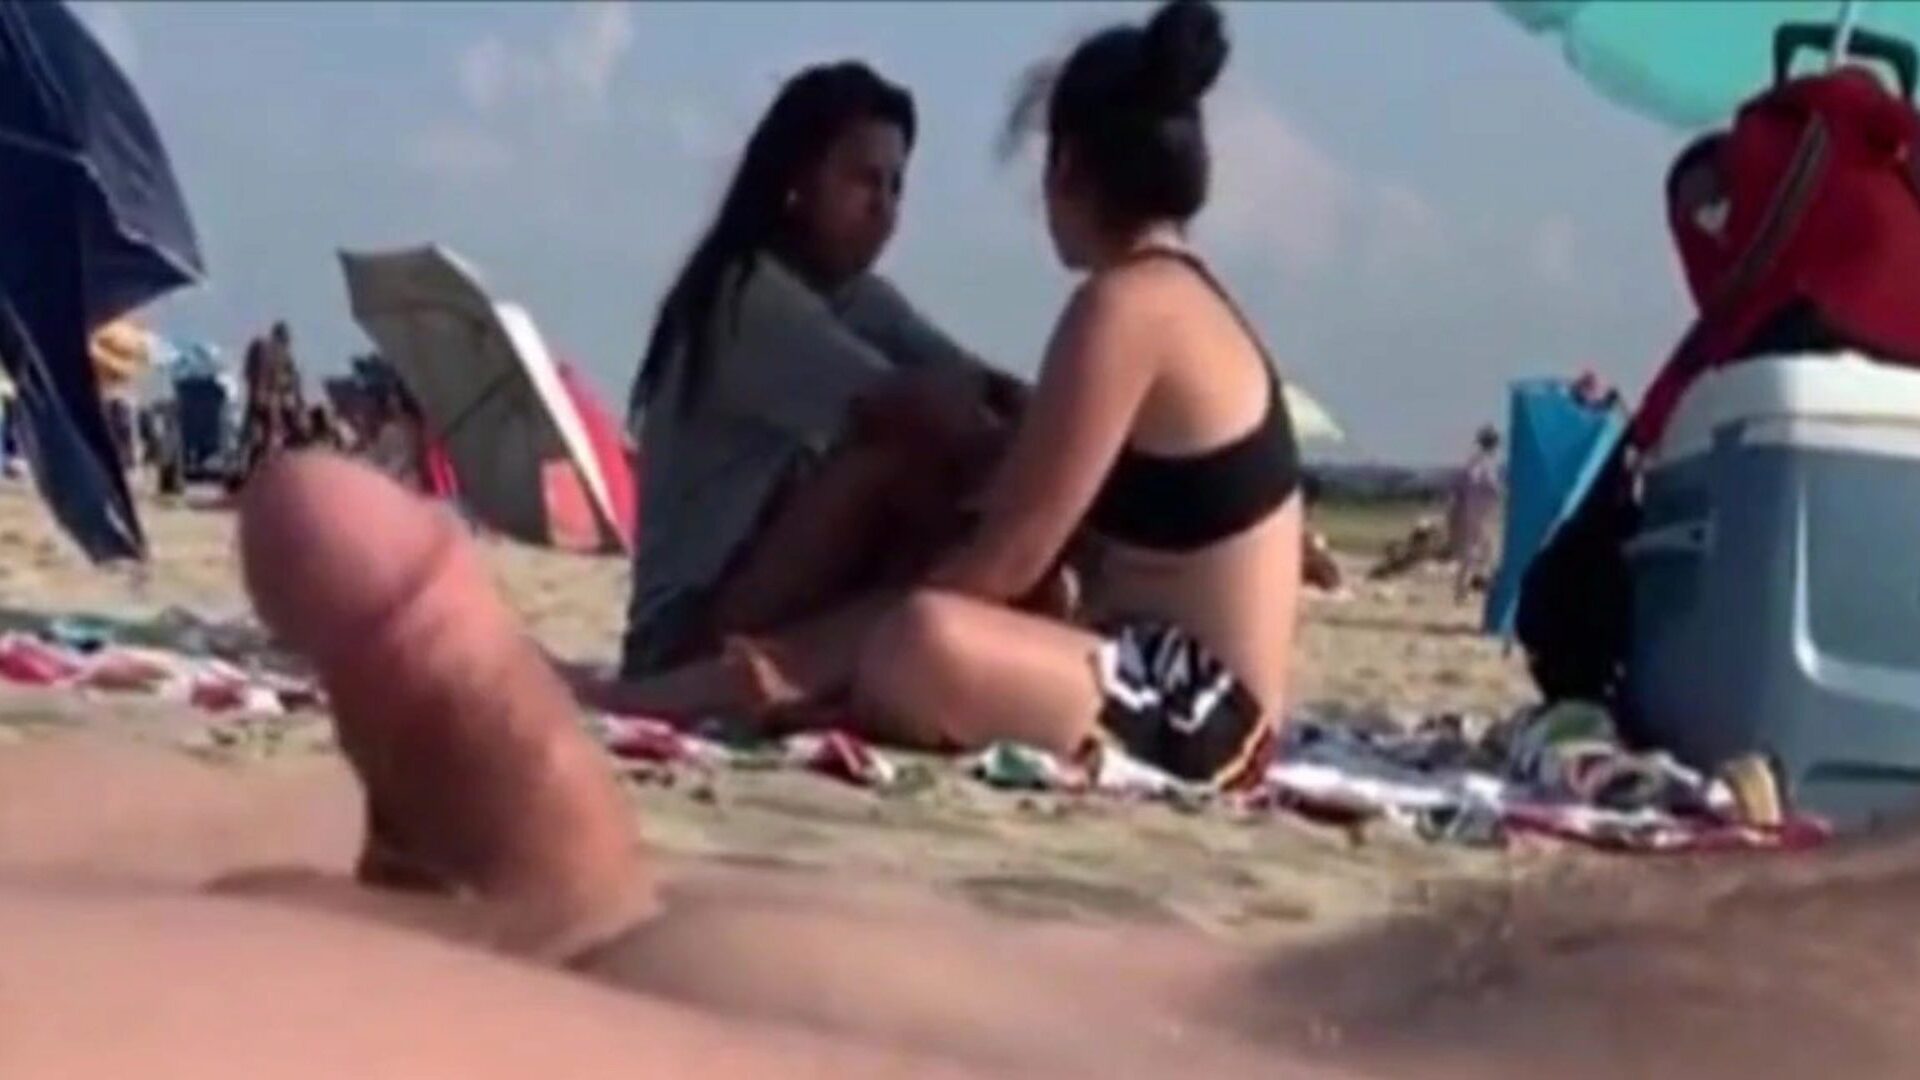 due ragazze stanno guardando il mio bastone da uomo su una spiaggia pubblica due ragazze che mi assistono al mio cazzo le lasciano andare ..